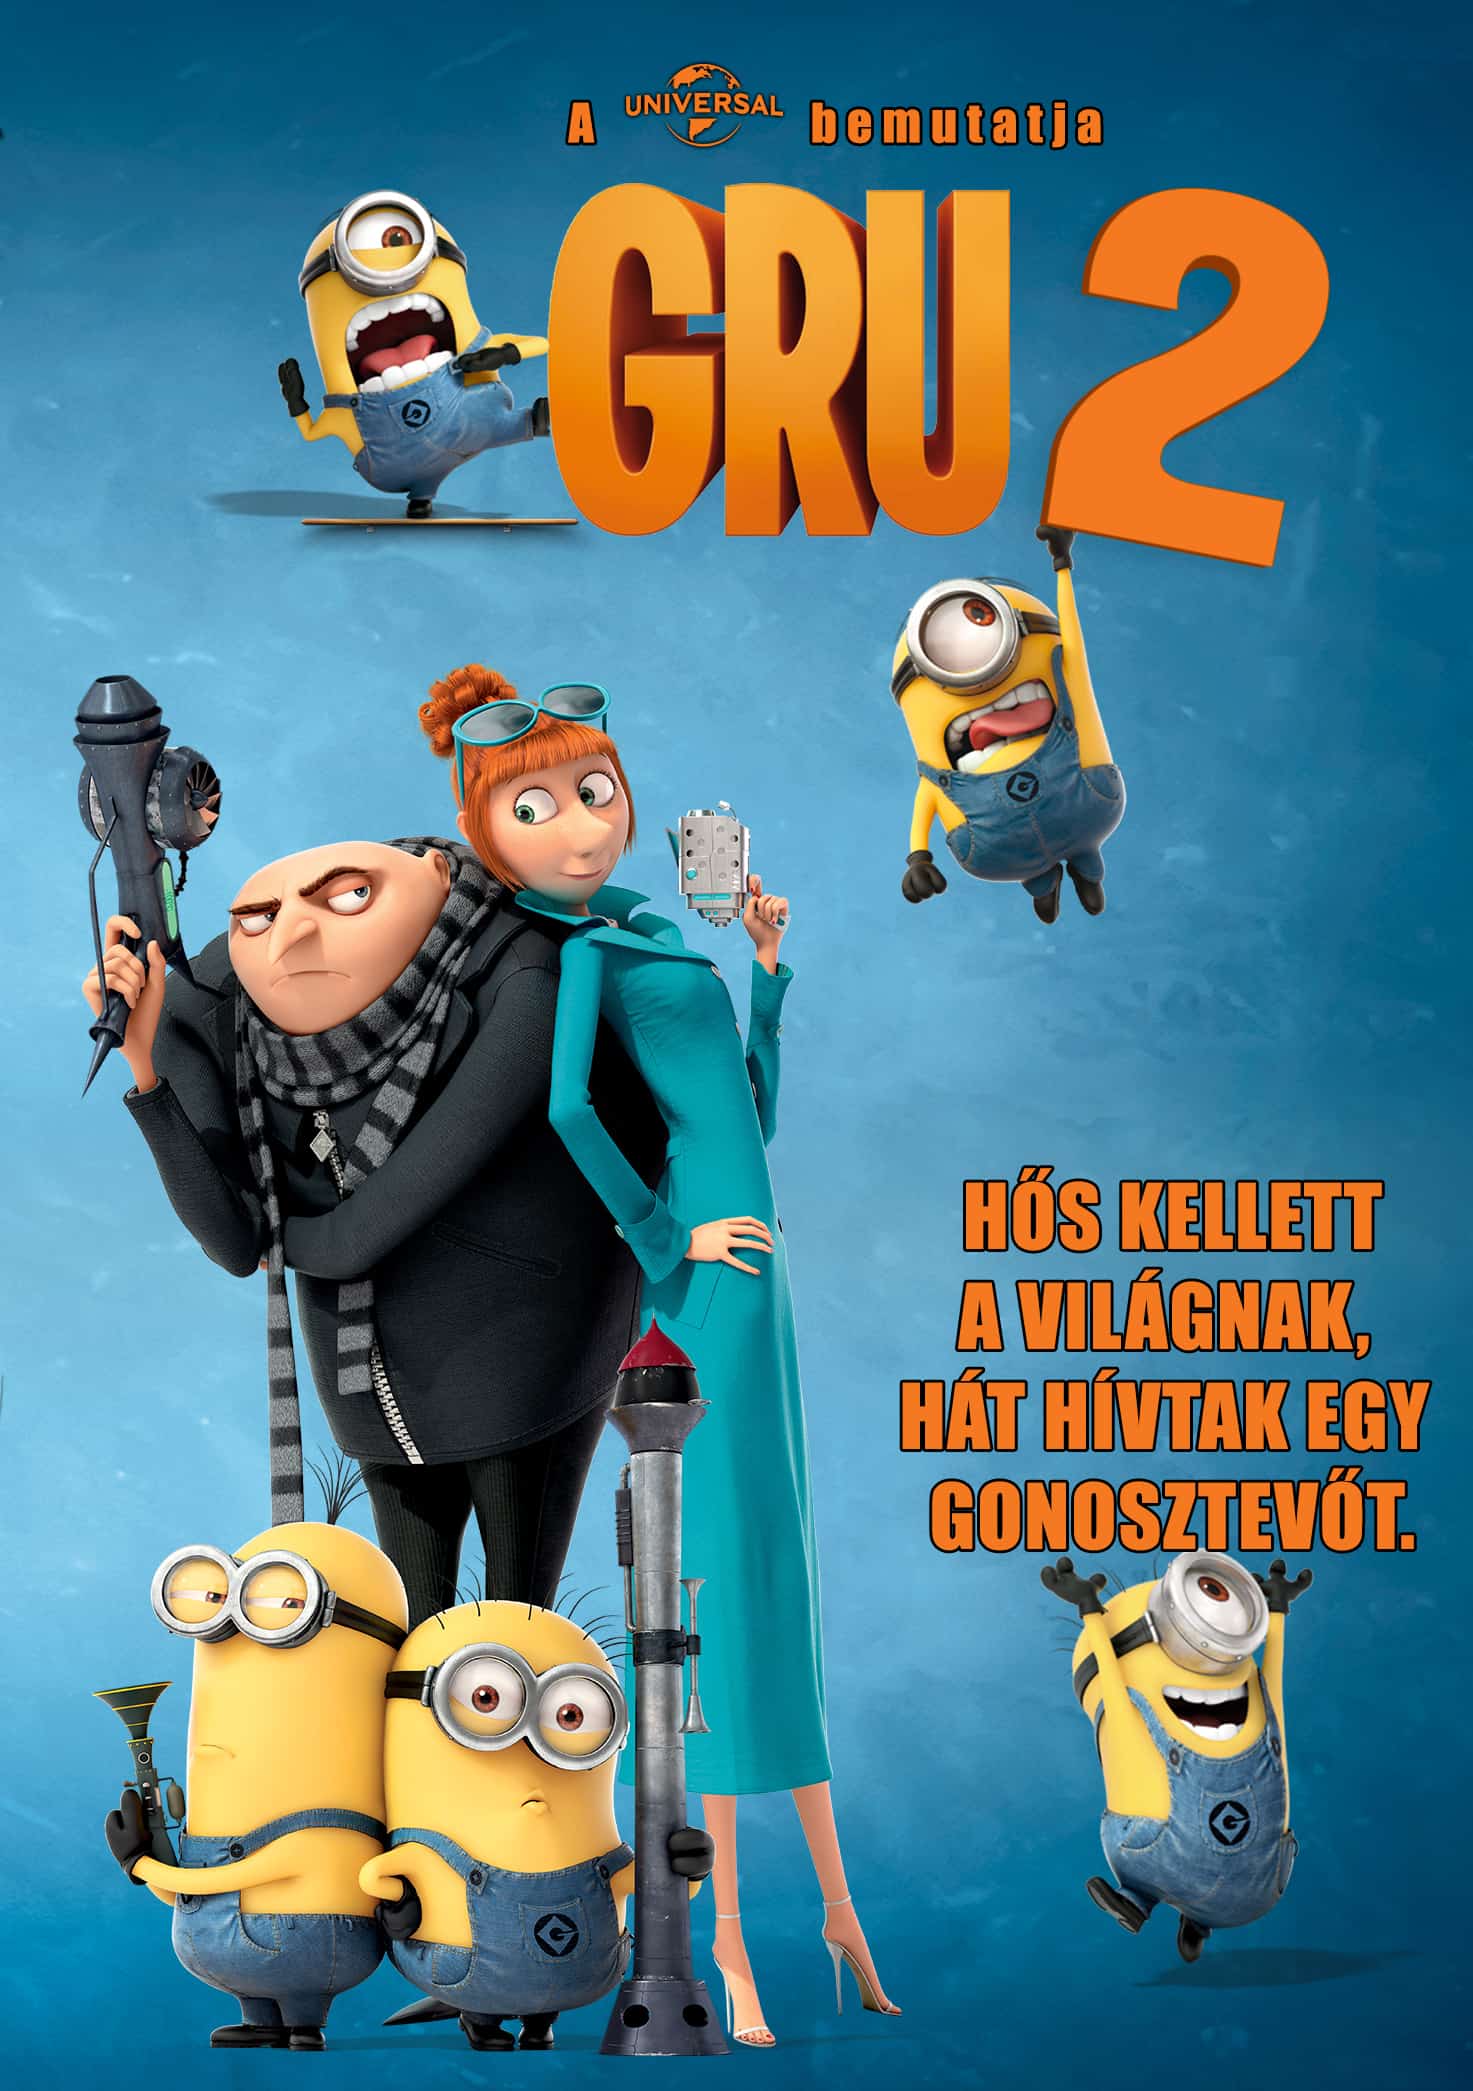 gru 2 teljes film magyarul video